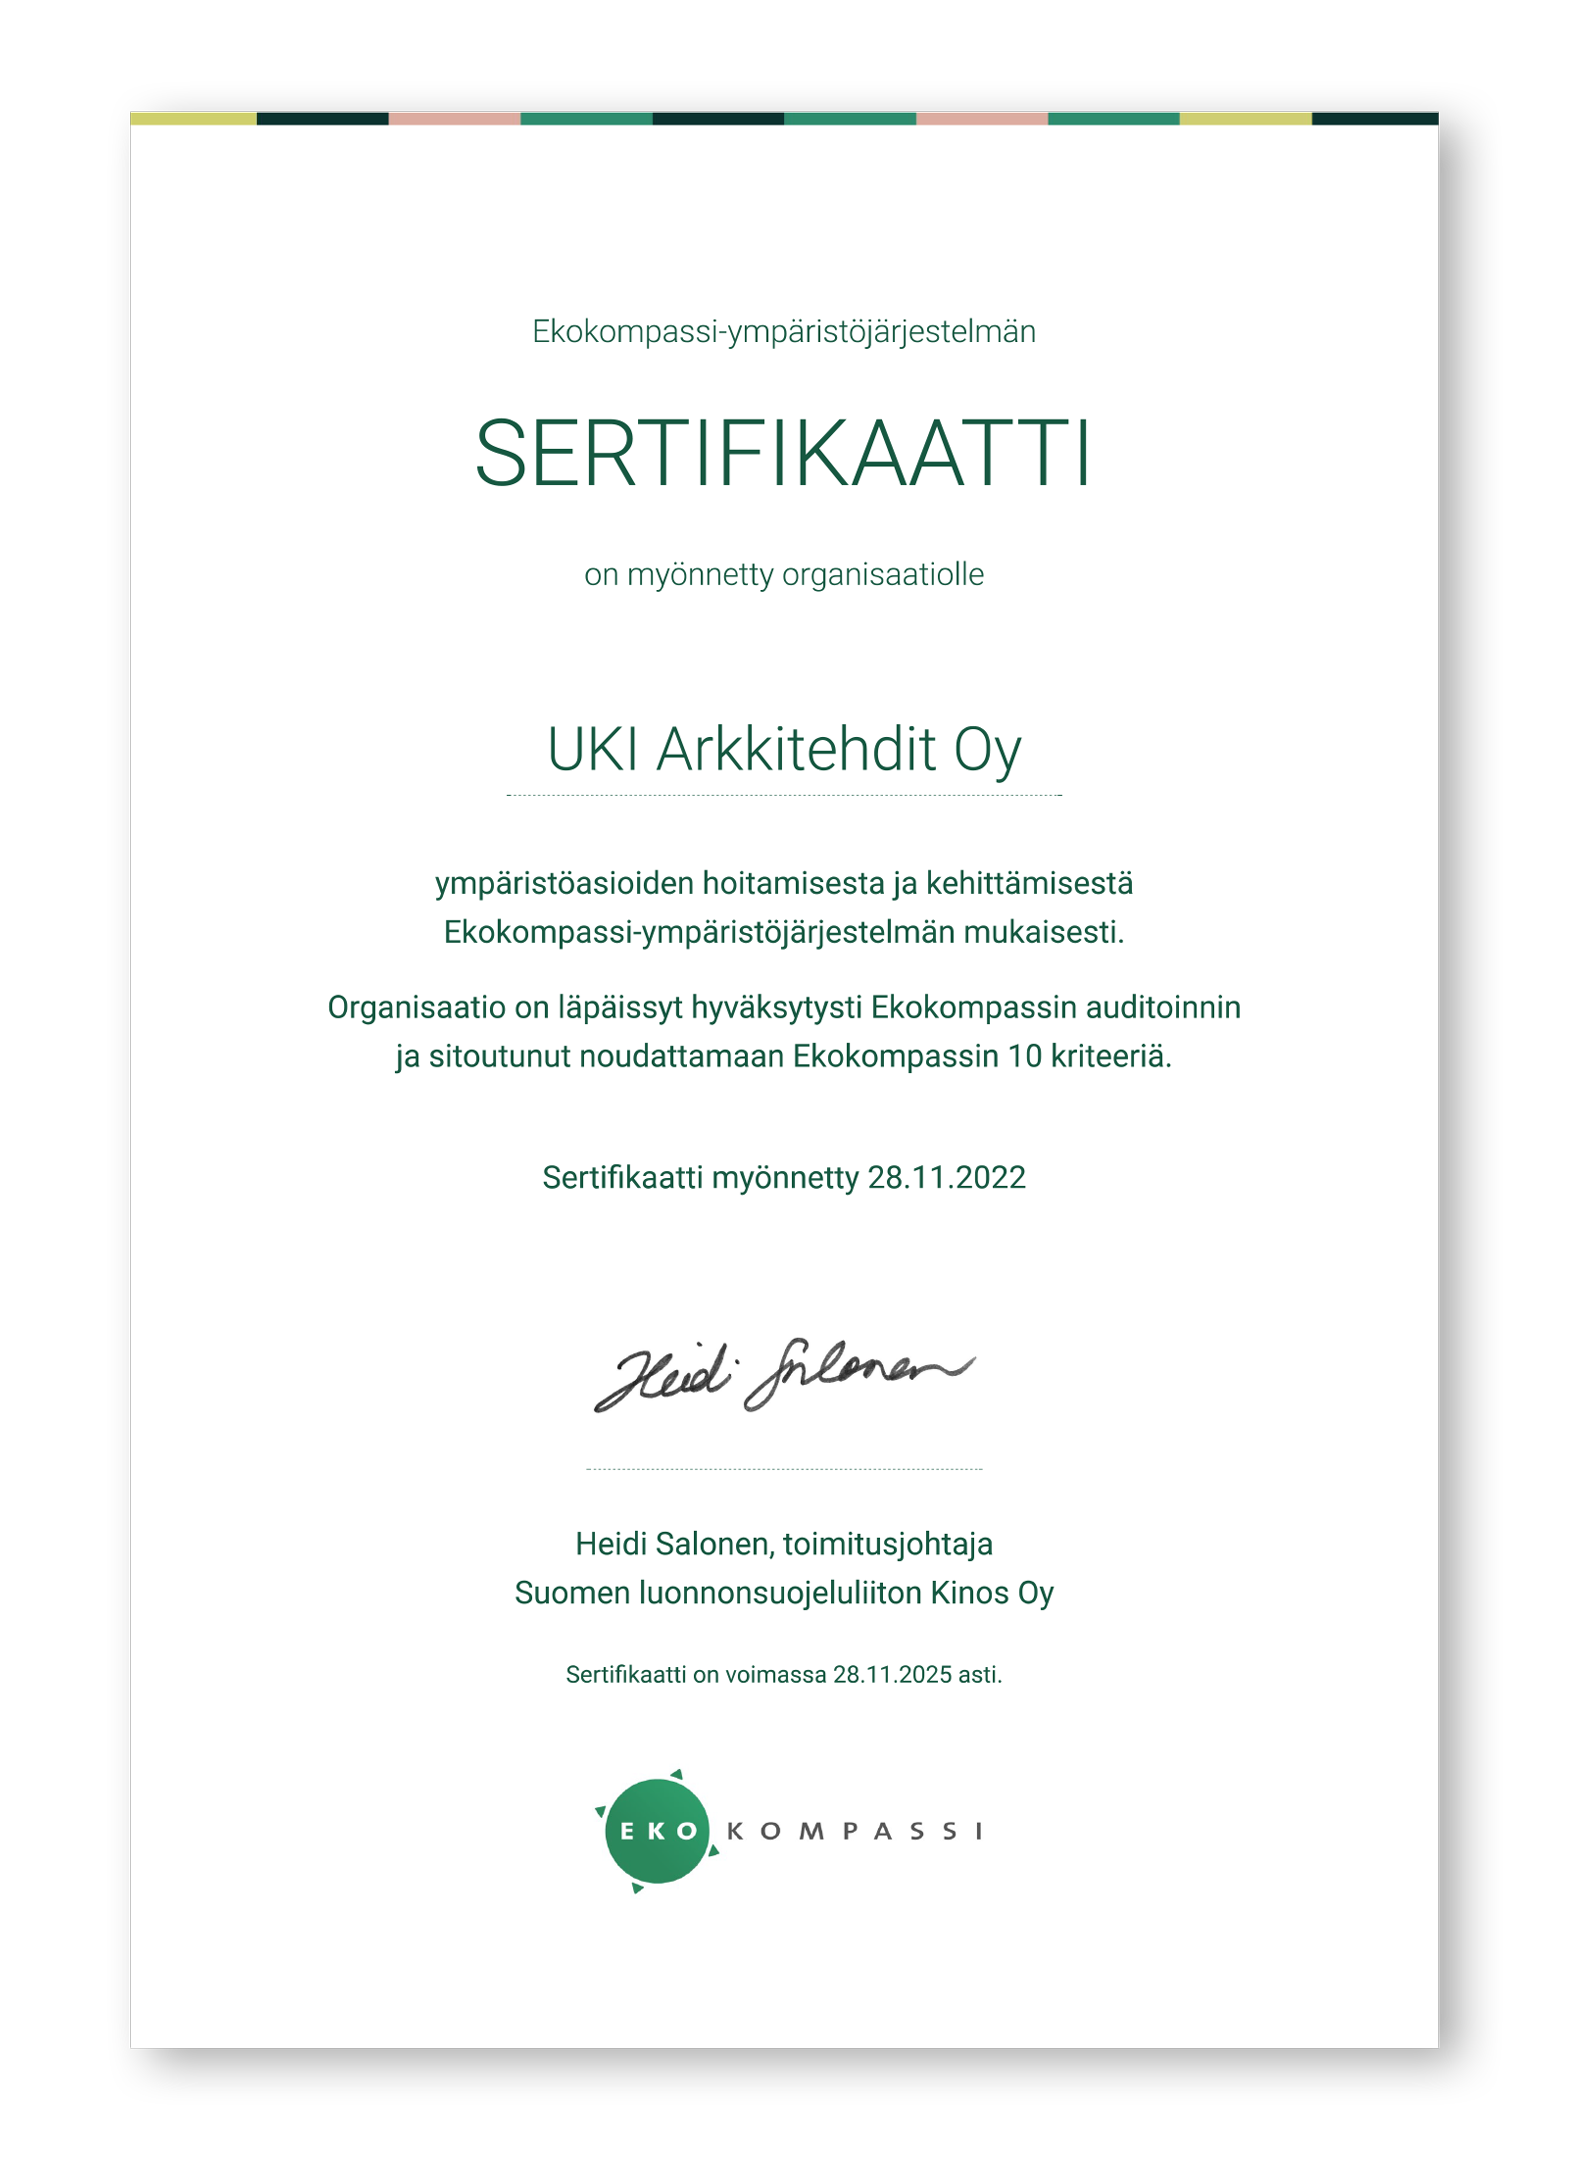 UKI Arkkitehtien Ekokompassi sertifikaatti